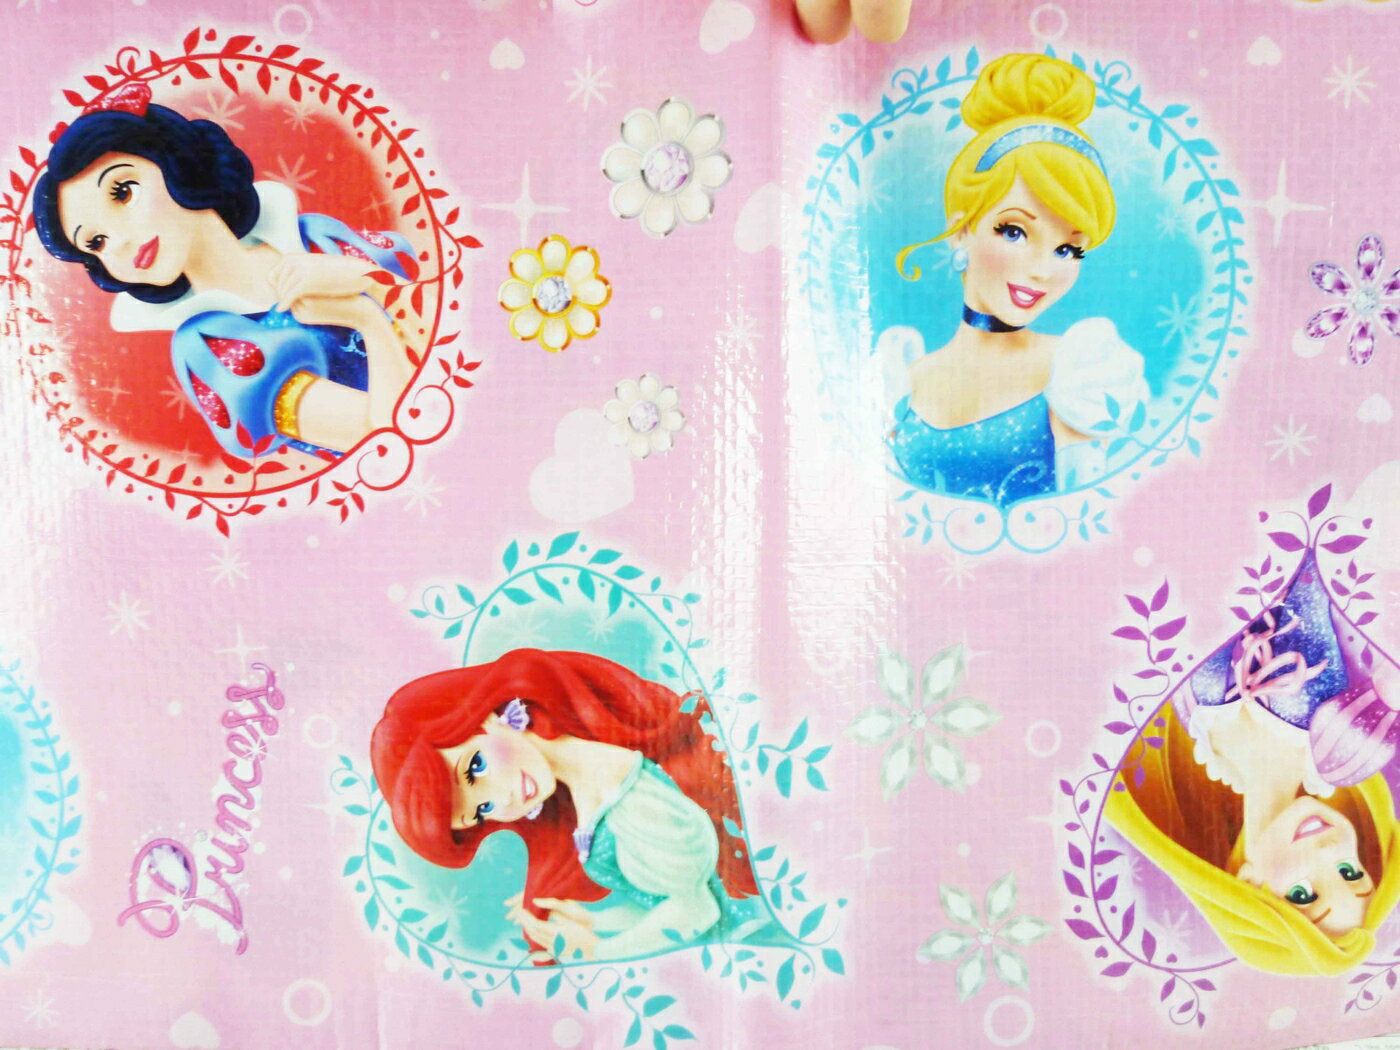 【震撼精品百貨】Disney 迪士尼 小美人魚-野餐墊-粉 震撼日式精品百貨